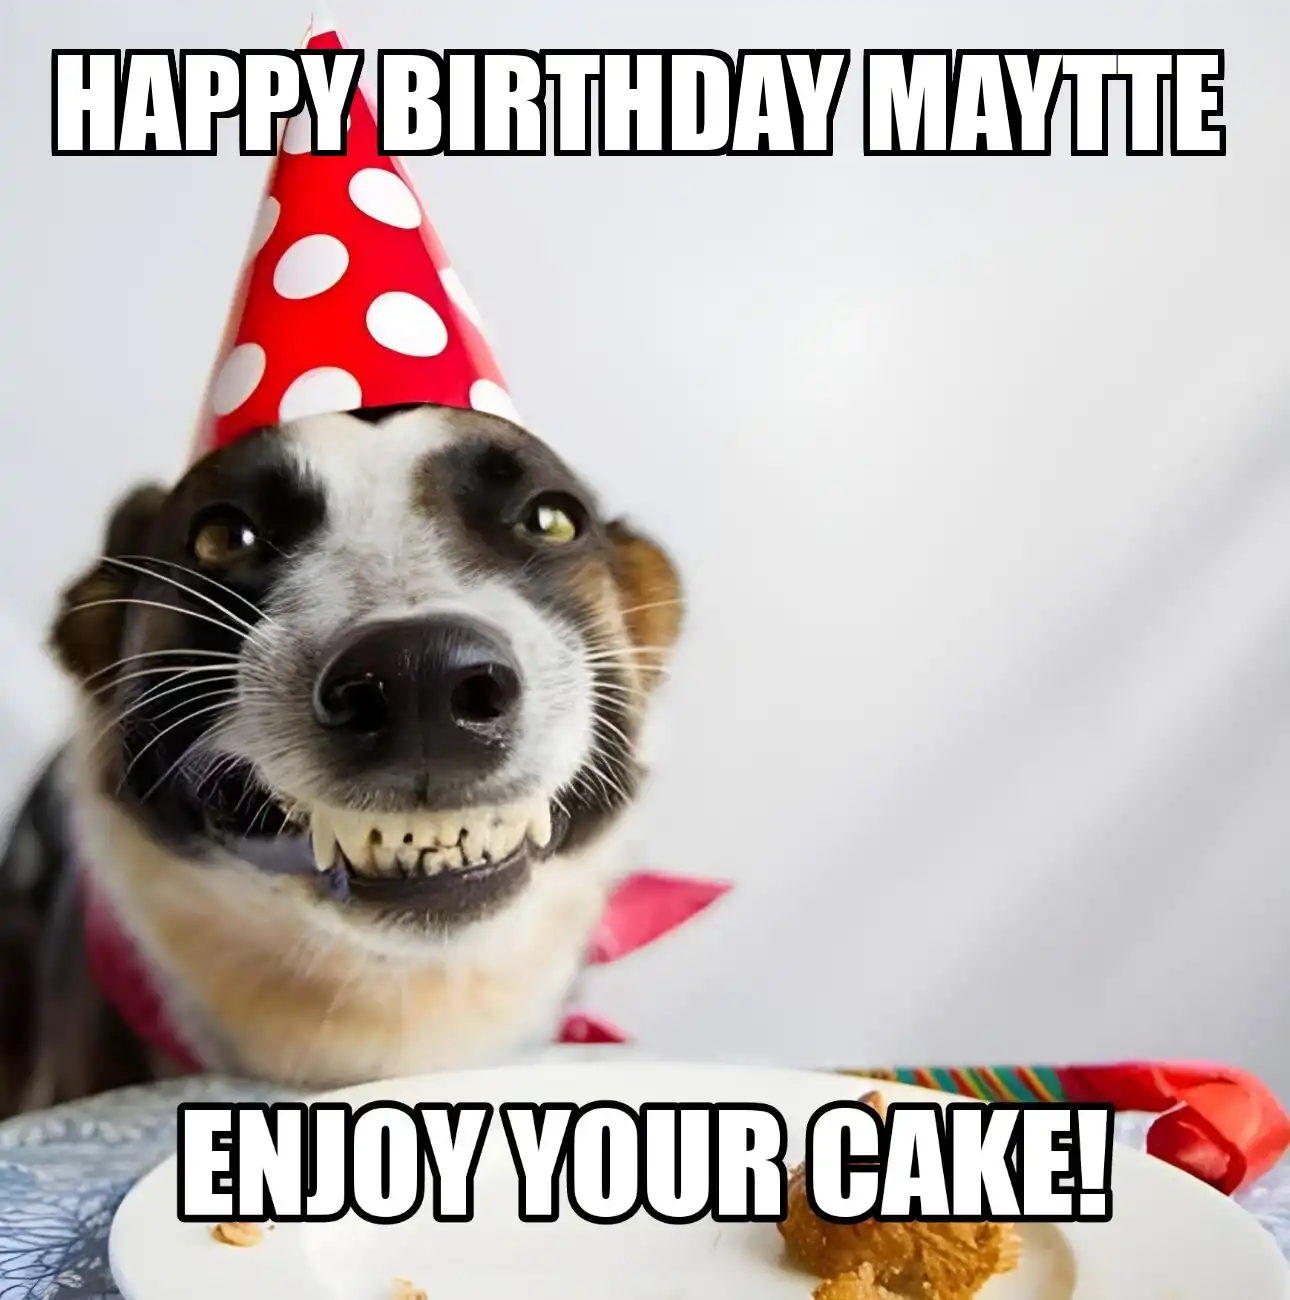 Happy Birthday Maytte Enjoy Your Cake Dog Meme